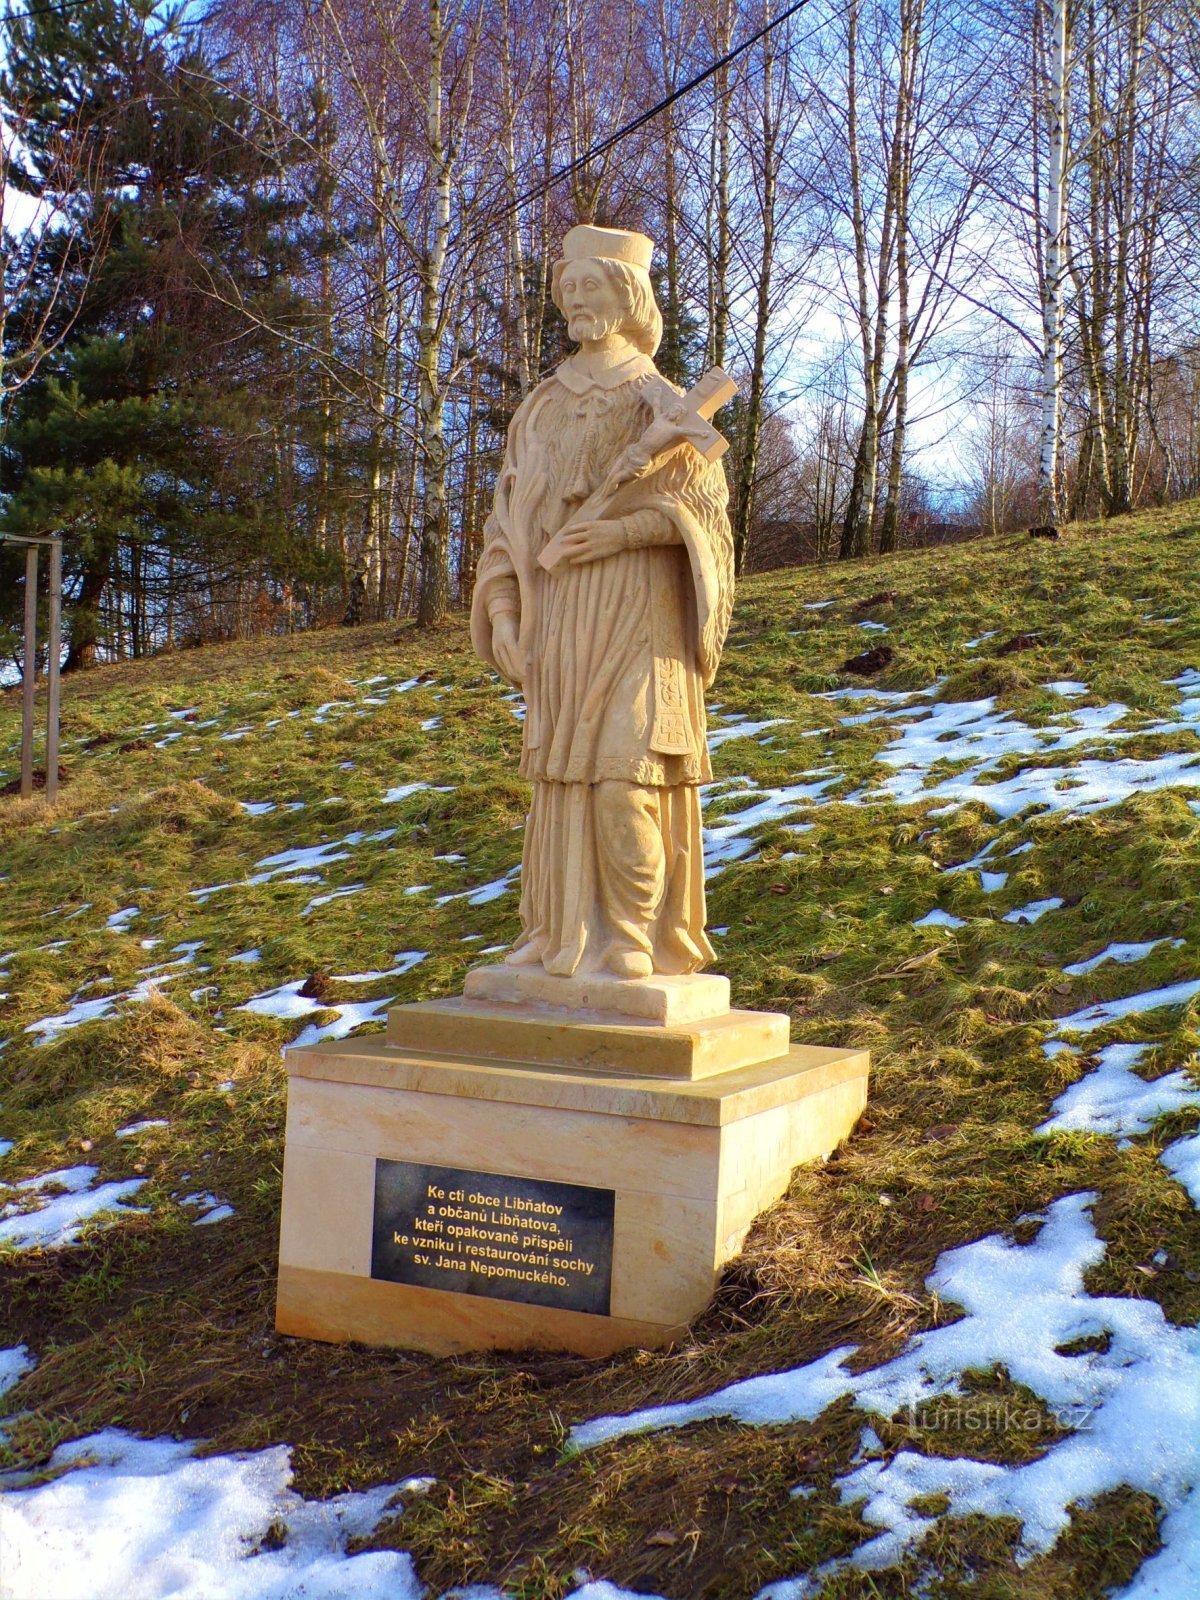 Άγαλμα του Αγ. John of Nepomuck (Libňatov, 10.2.2022 Φεβρουαρίου XNUMX)